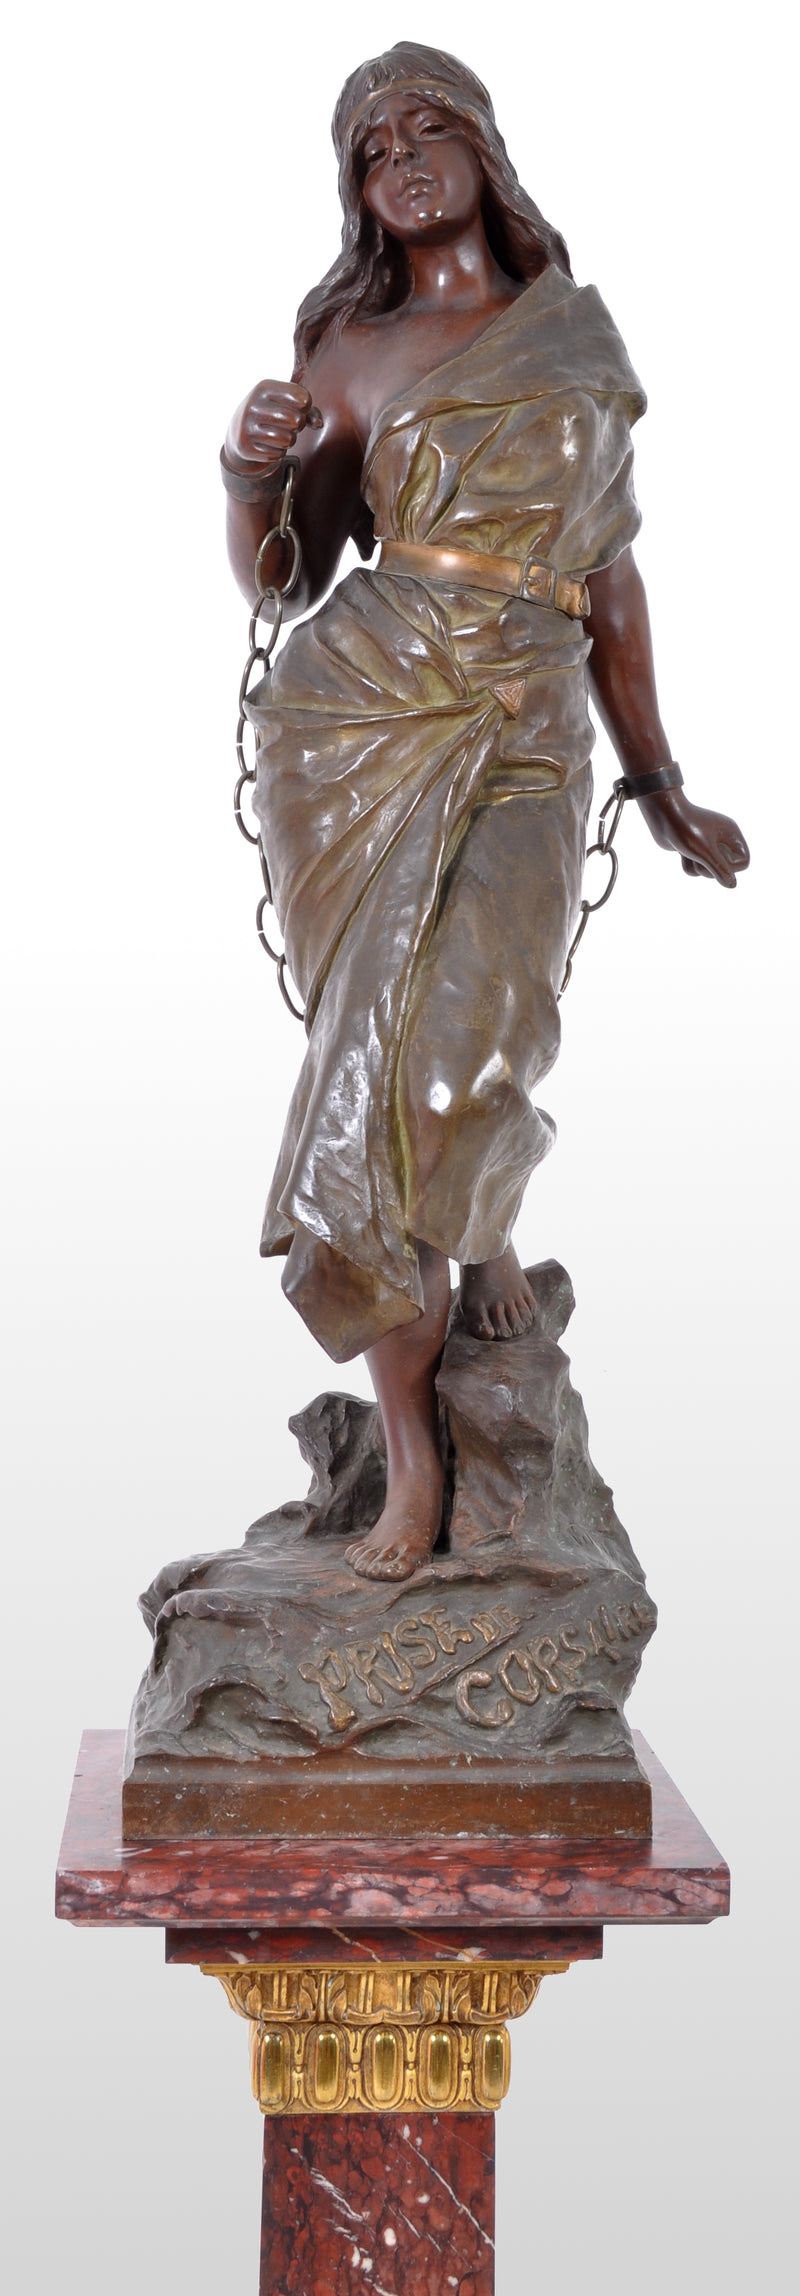 Antique French Art Nouveau Bronze Figure, "Prise de Corsaire", Emmanuel Villanis, circa 1890